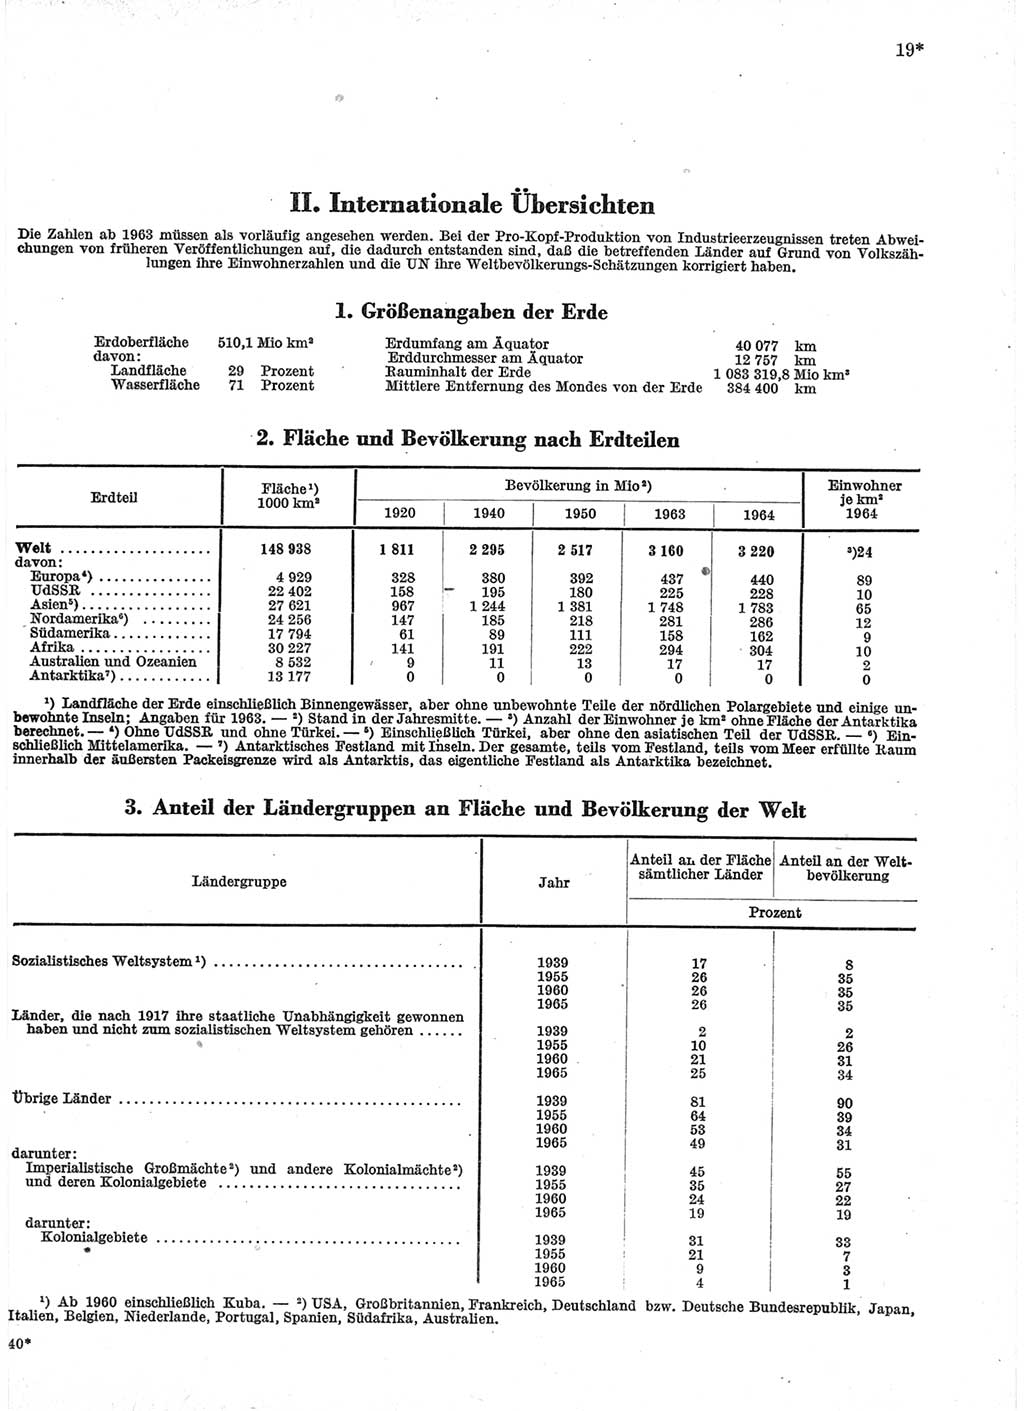 Statistisches Jahrbuch der Deutschen Demokratischen Republik (DDR) 1966, Seite 19 (Stat. Jb. DDR 1966, S. 19)